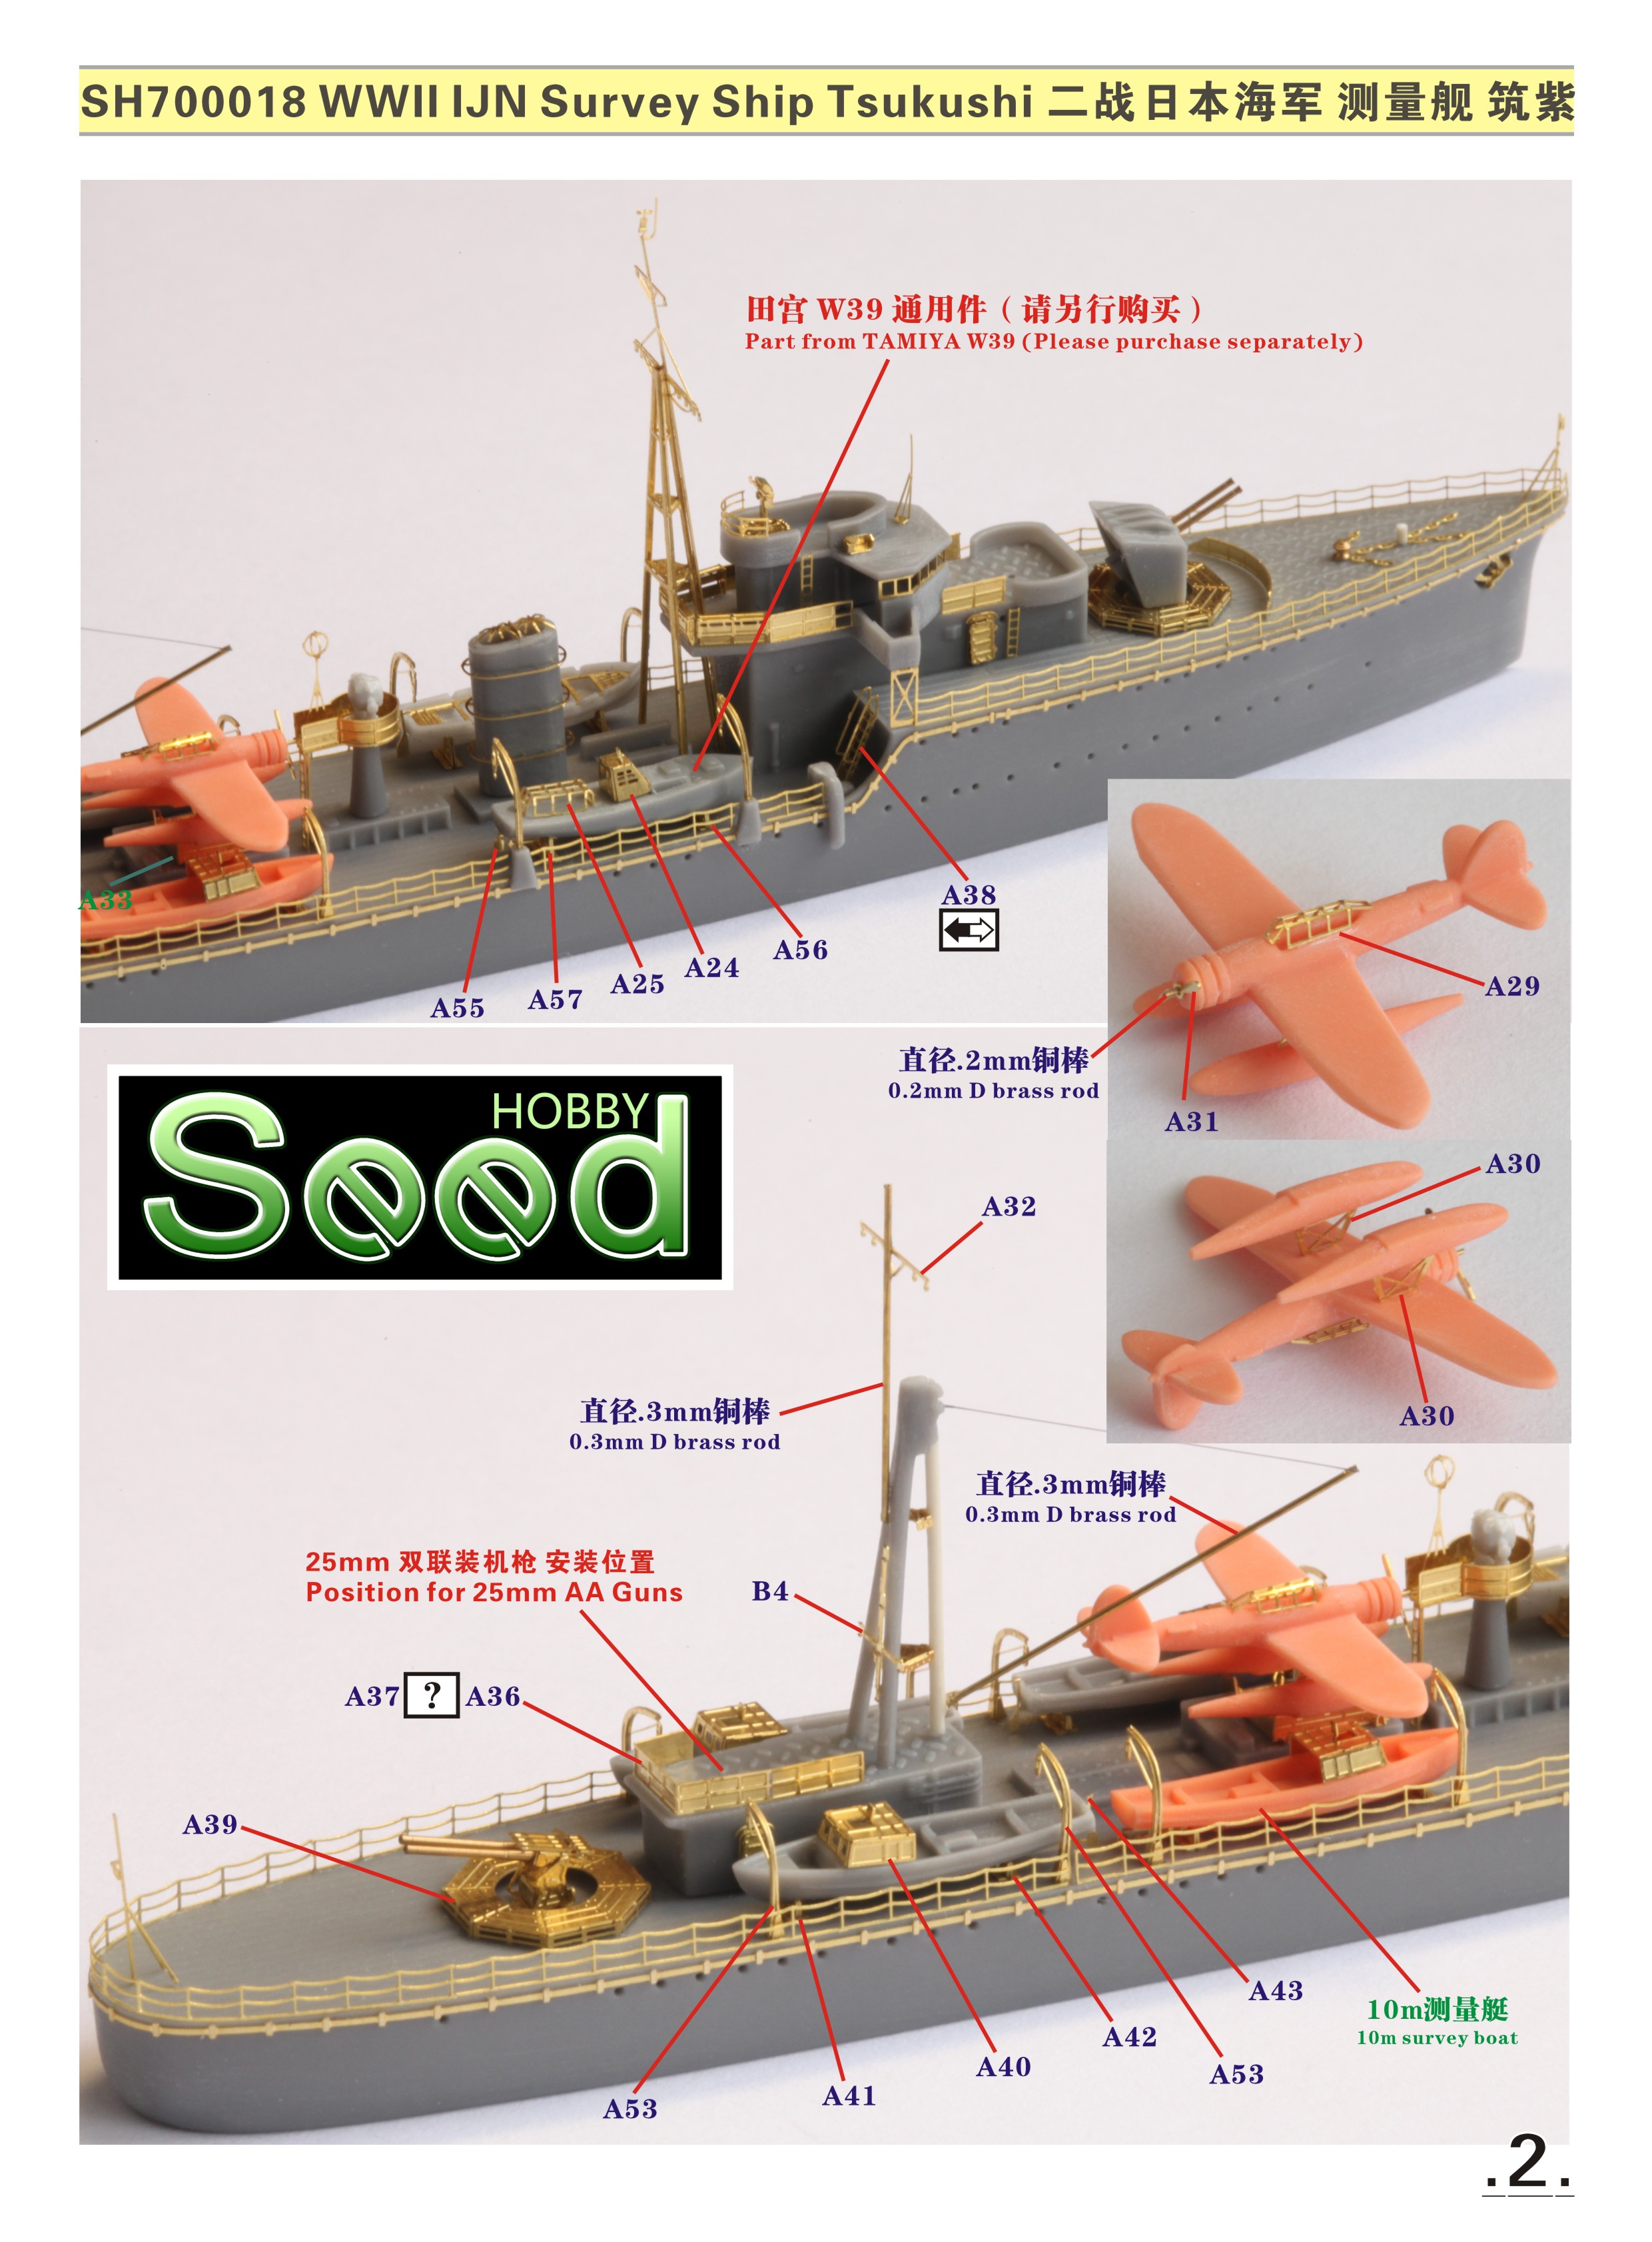 1/700 二战日本海军筑紫号测量舰树脂模型套件